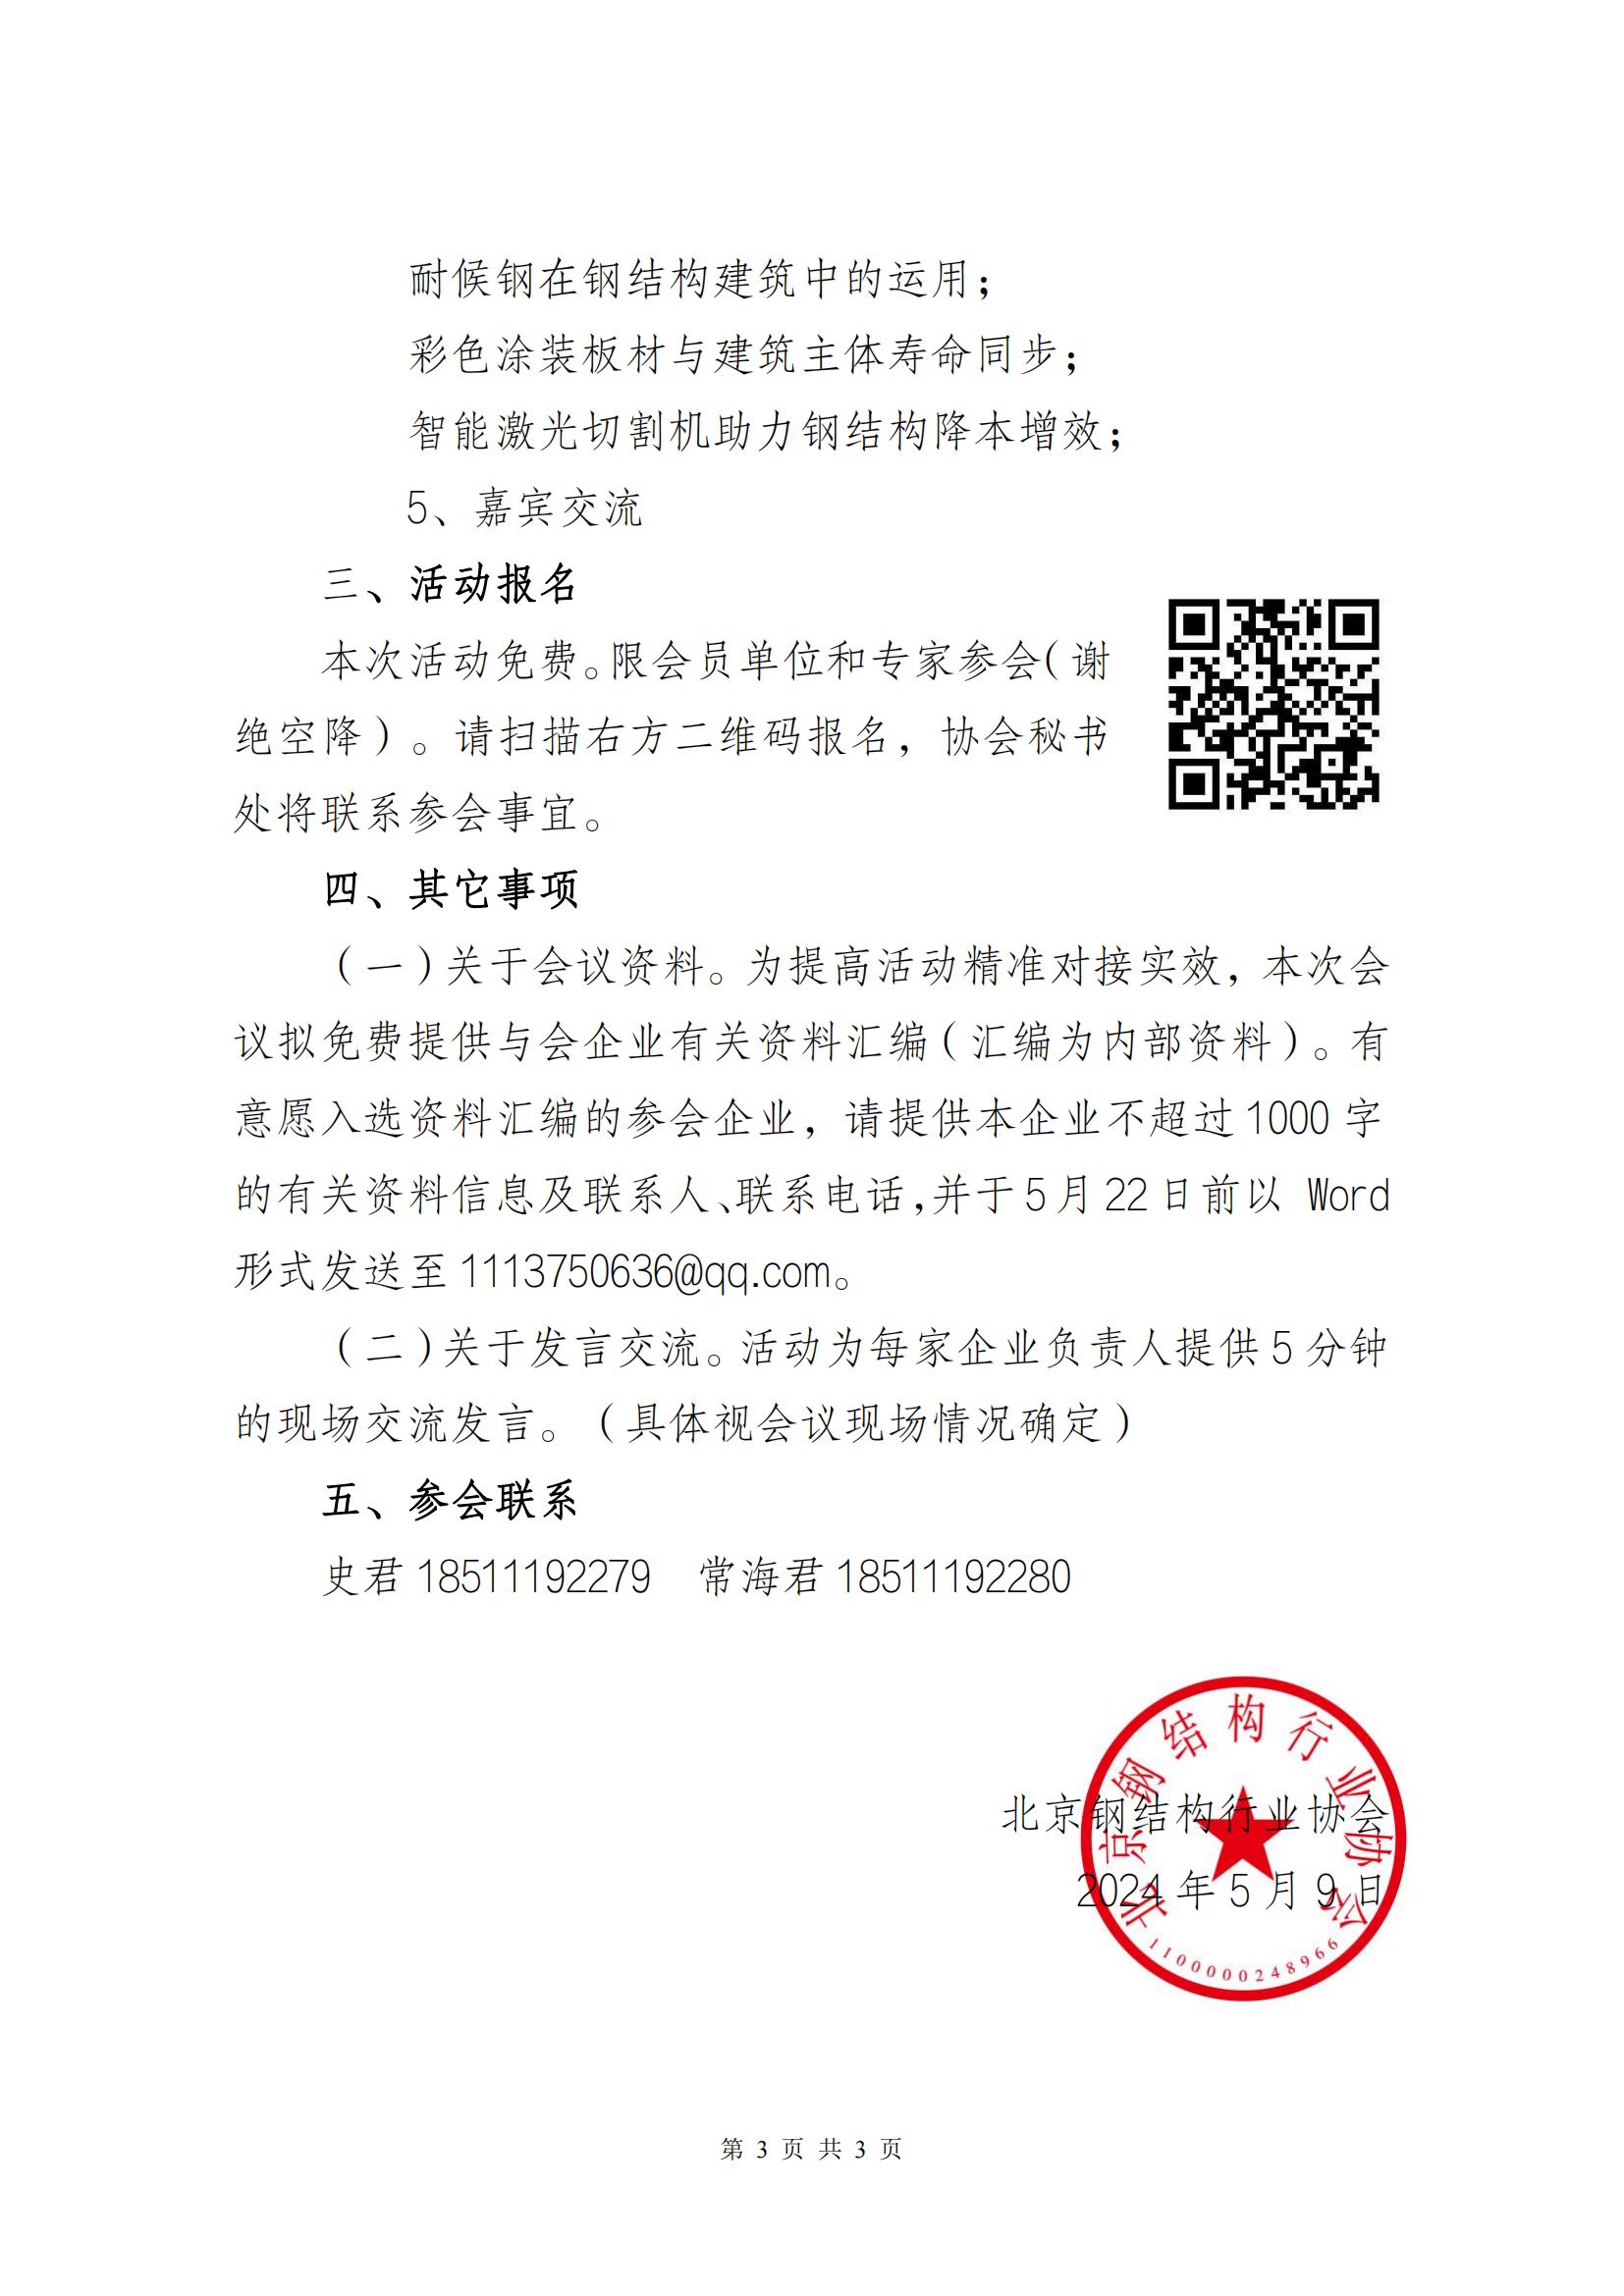 走进名企名院之走进北京首钢国际工程技术有限公司活动的通知_02.jpg